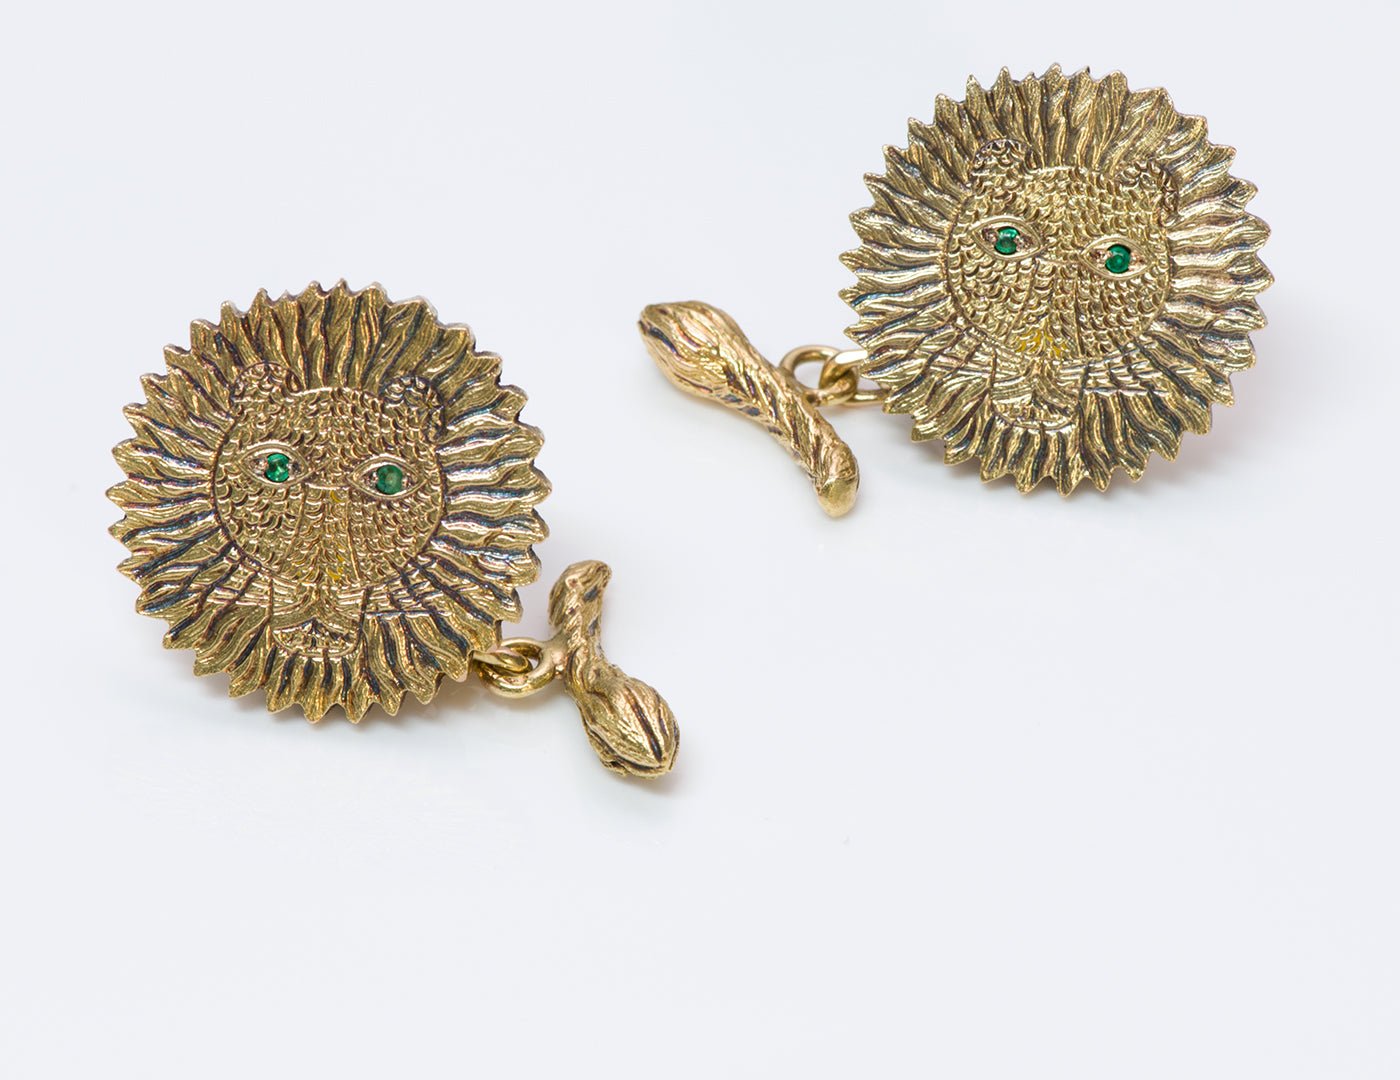 Henri Maik 18K Gold Emerald Lion Cufflinks